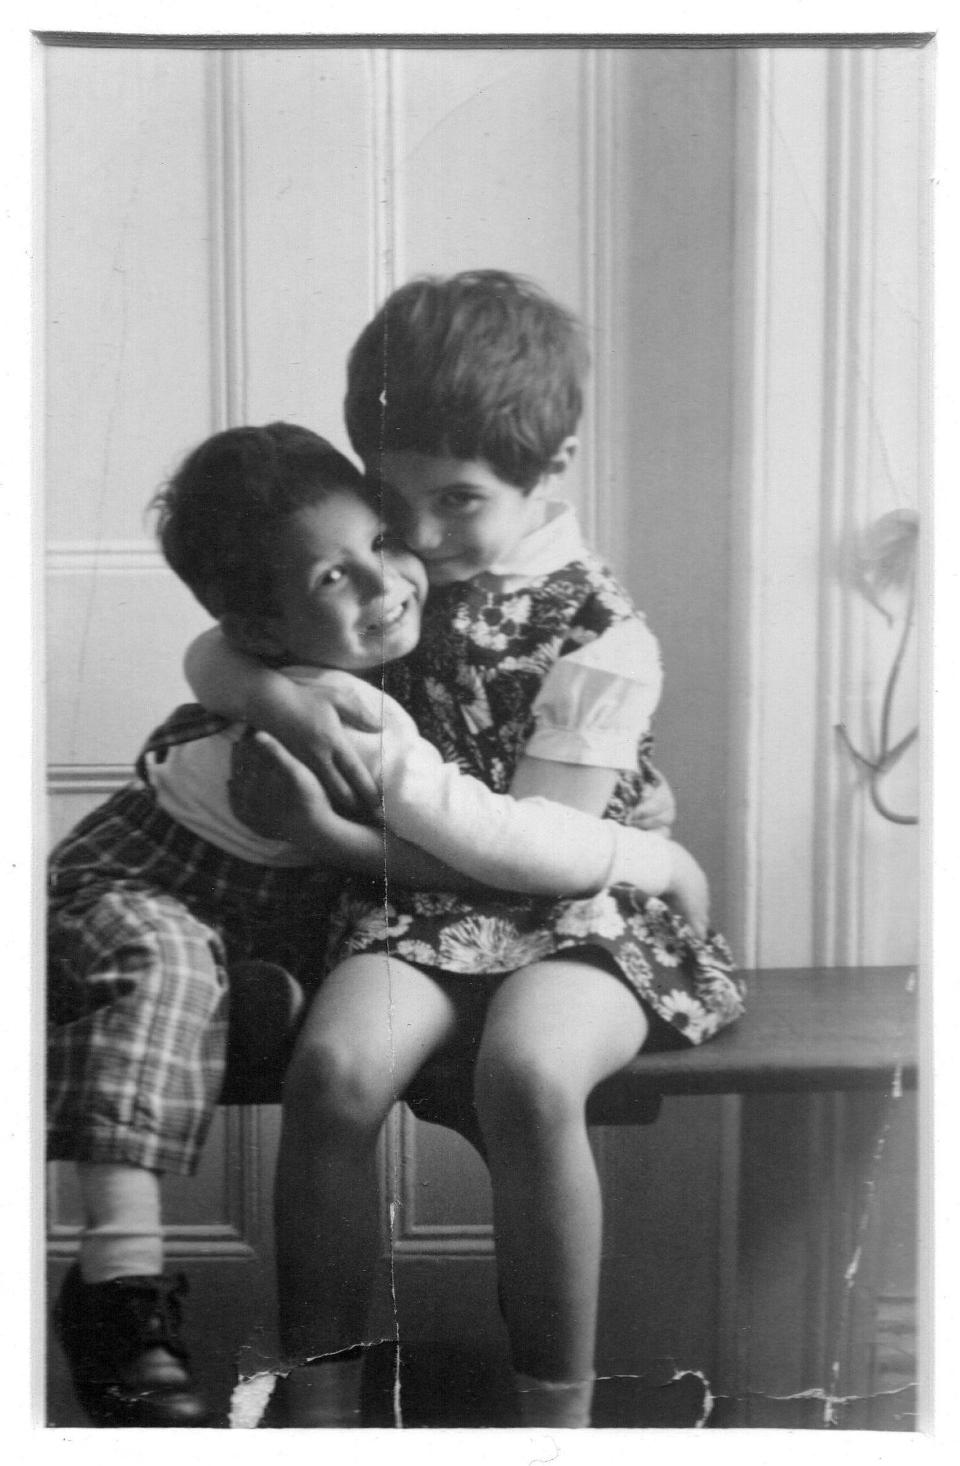 Adrianne and Adam Lobel siblings in childhood.